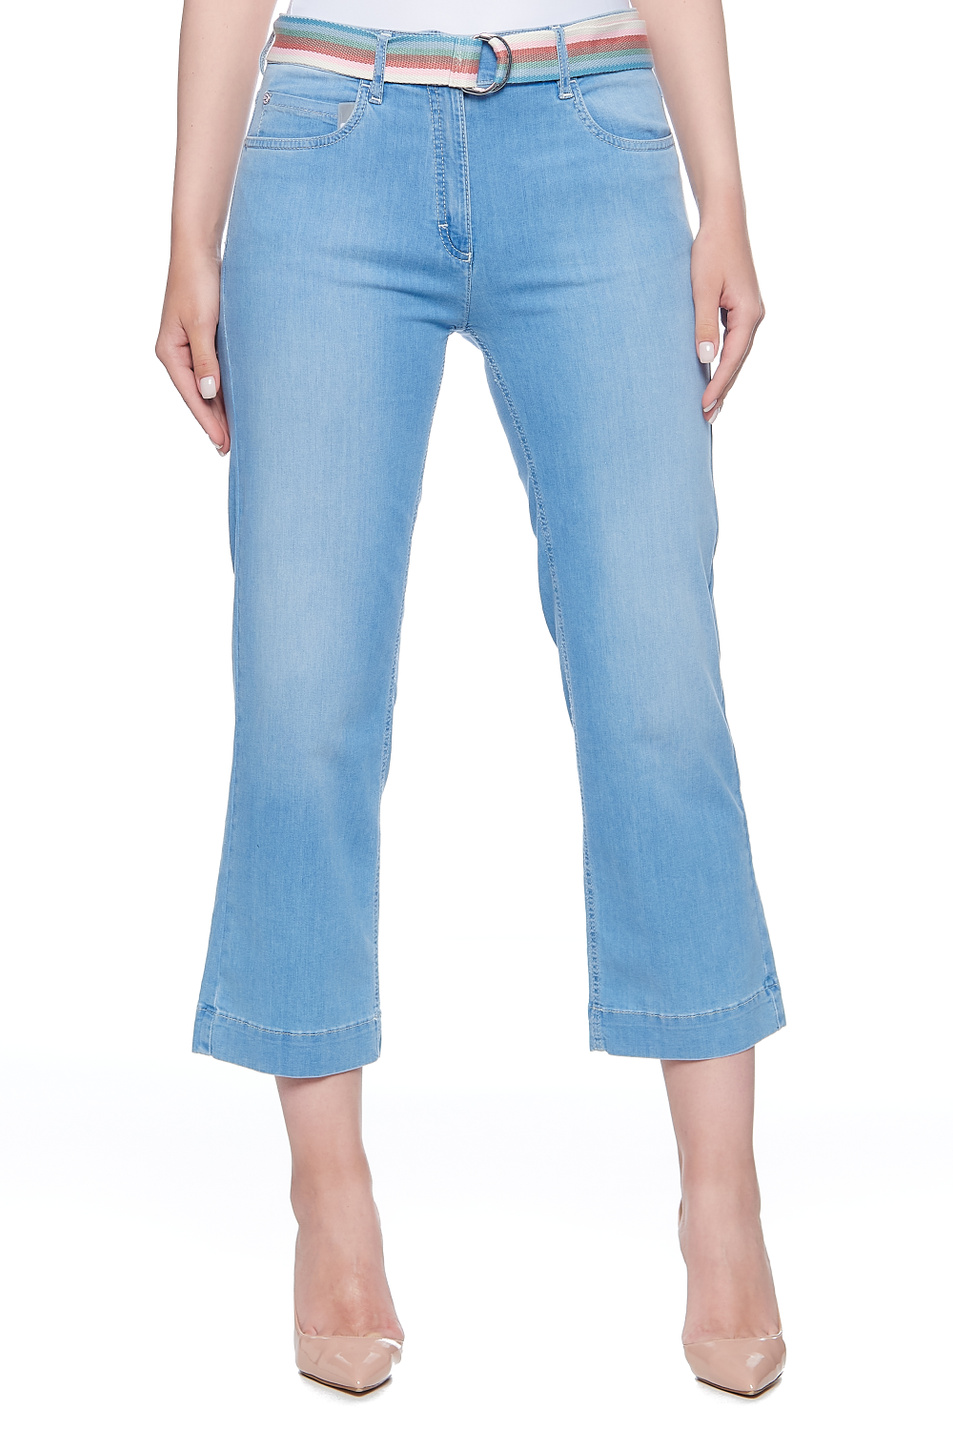 Zerres Укороченные джинсы BELLA (цвет ), артикул 0924717-BELLA G | Фото 1